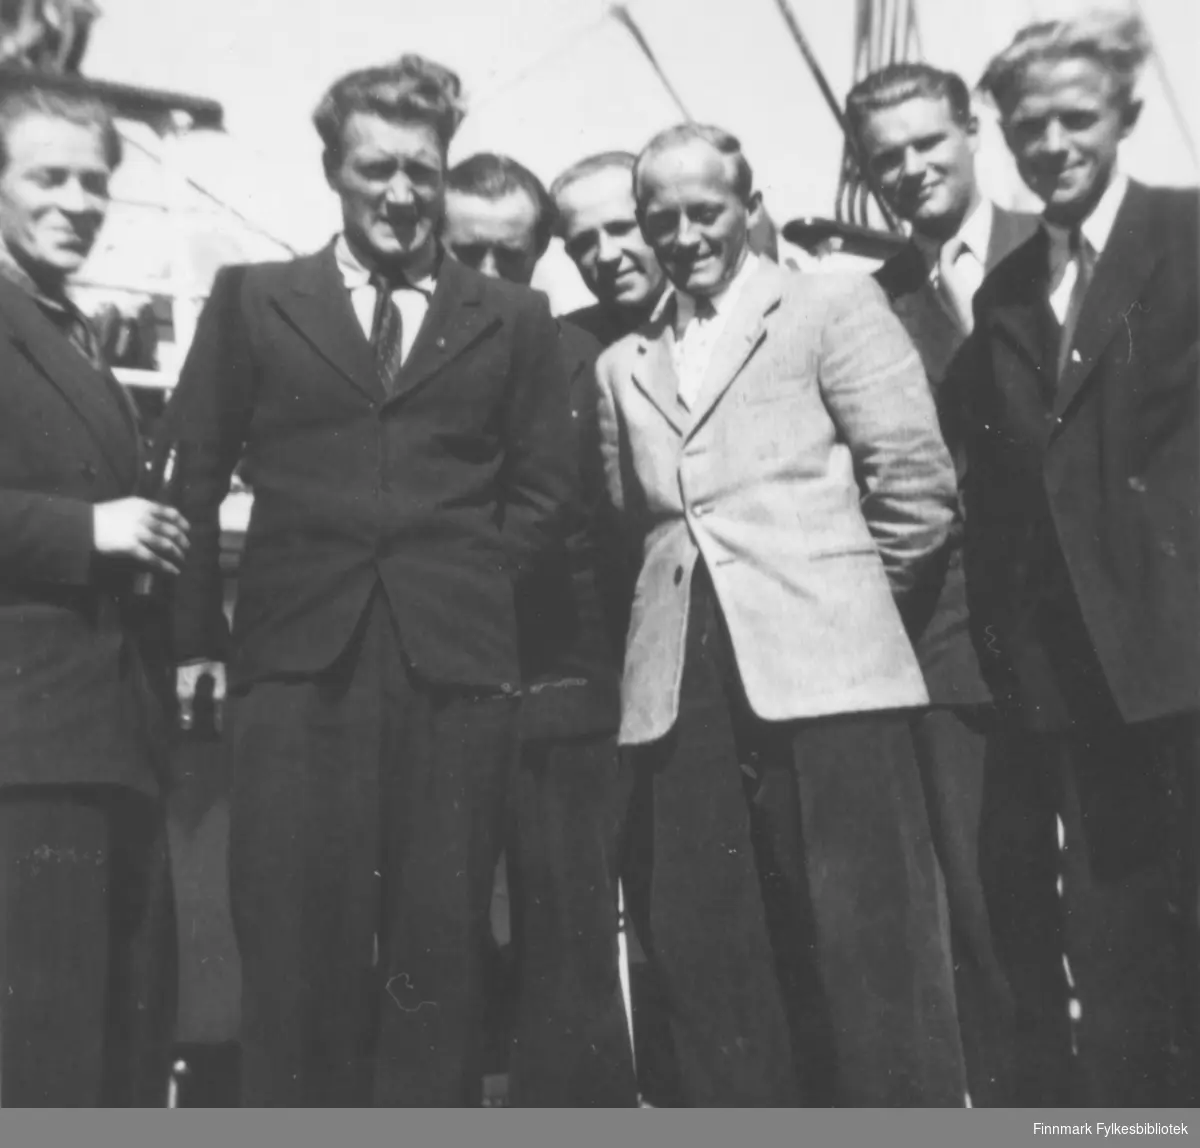 Flere menn fra Vadsø på hurtigruta på vei til eller fra en militærøvelse, kanskje til Drevjamoen? Bildet ligner veldig på 05045-039, som er datert 1955-1956